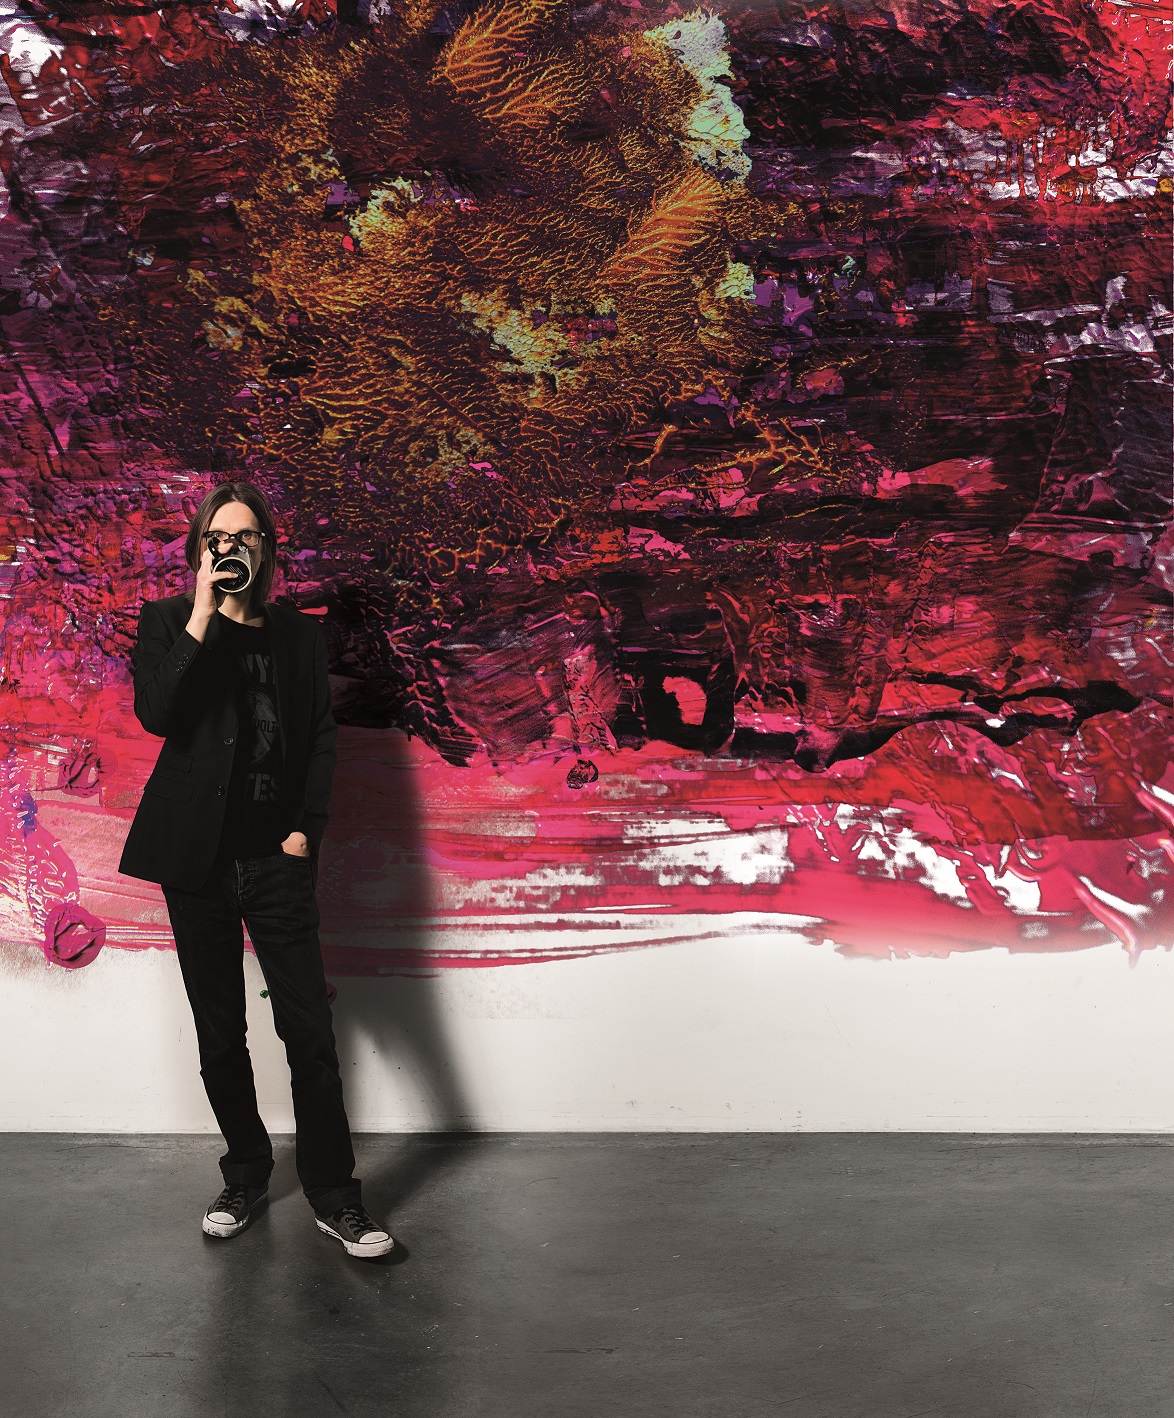 Steven Wilson - "Przełom myśli"